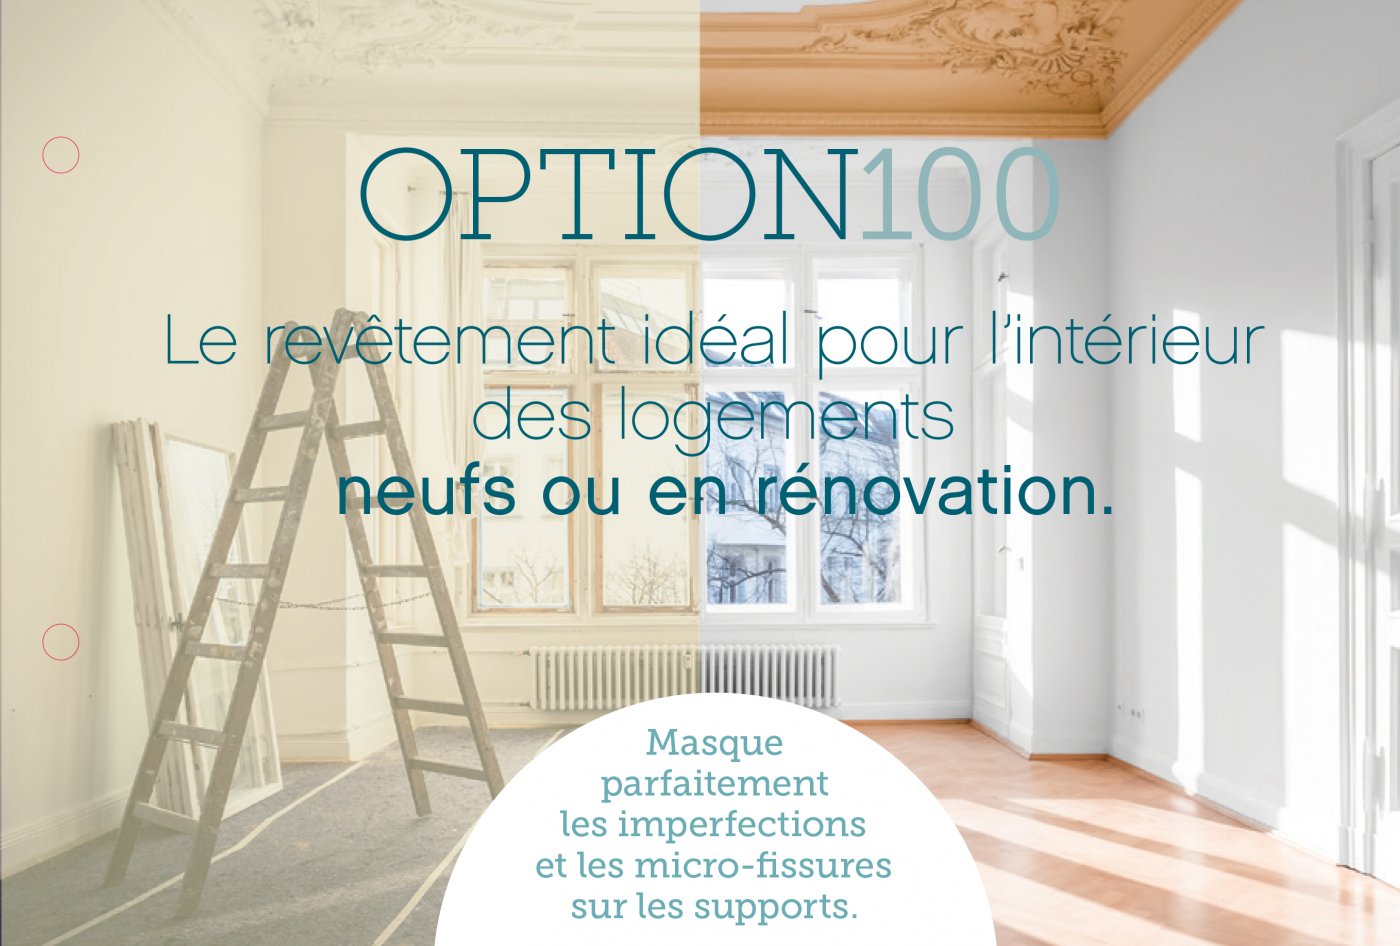 OPTION 100 le revêtement pour l'intérieur de vos logements